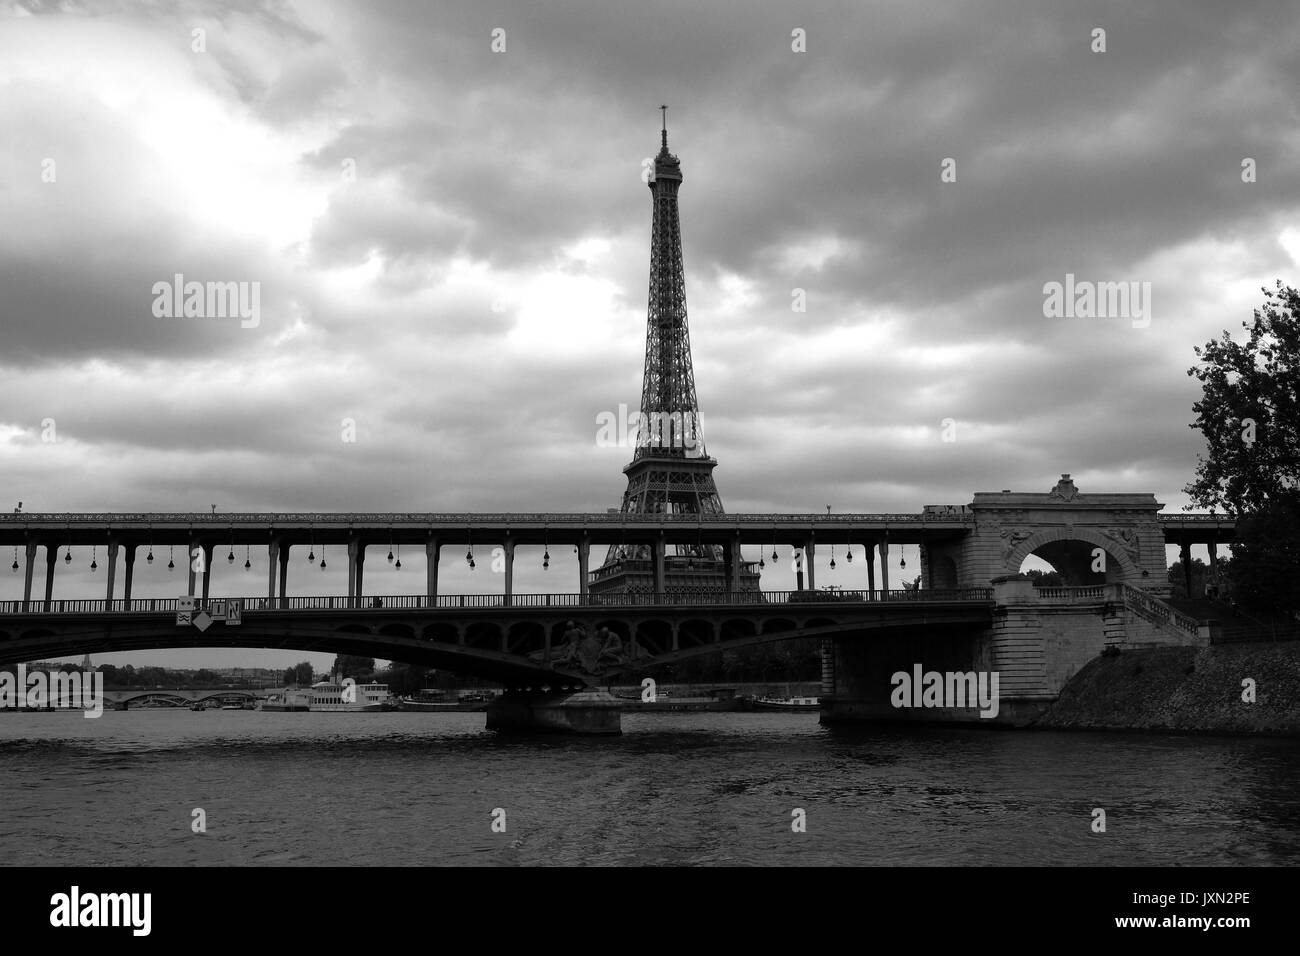 La Tour Eiffel à Paris comme on le voit depuis la Seine lors d'une excursion en bateau photographiée en noir et blanc Banque D'Images